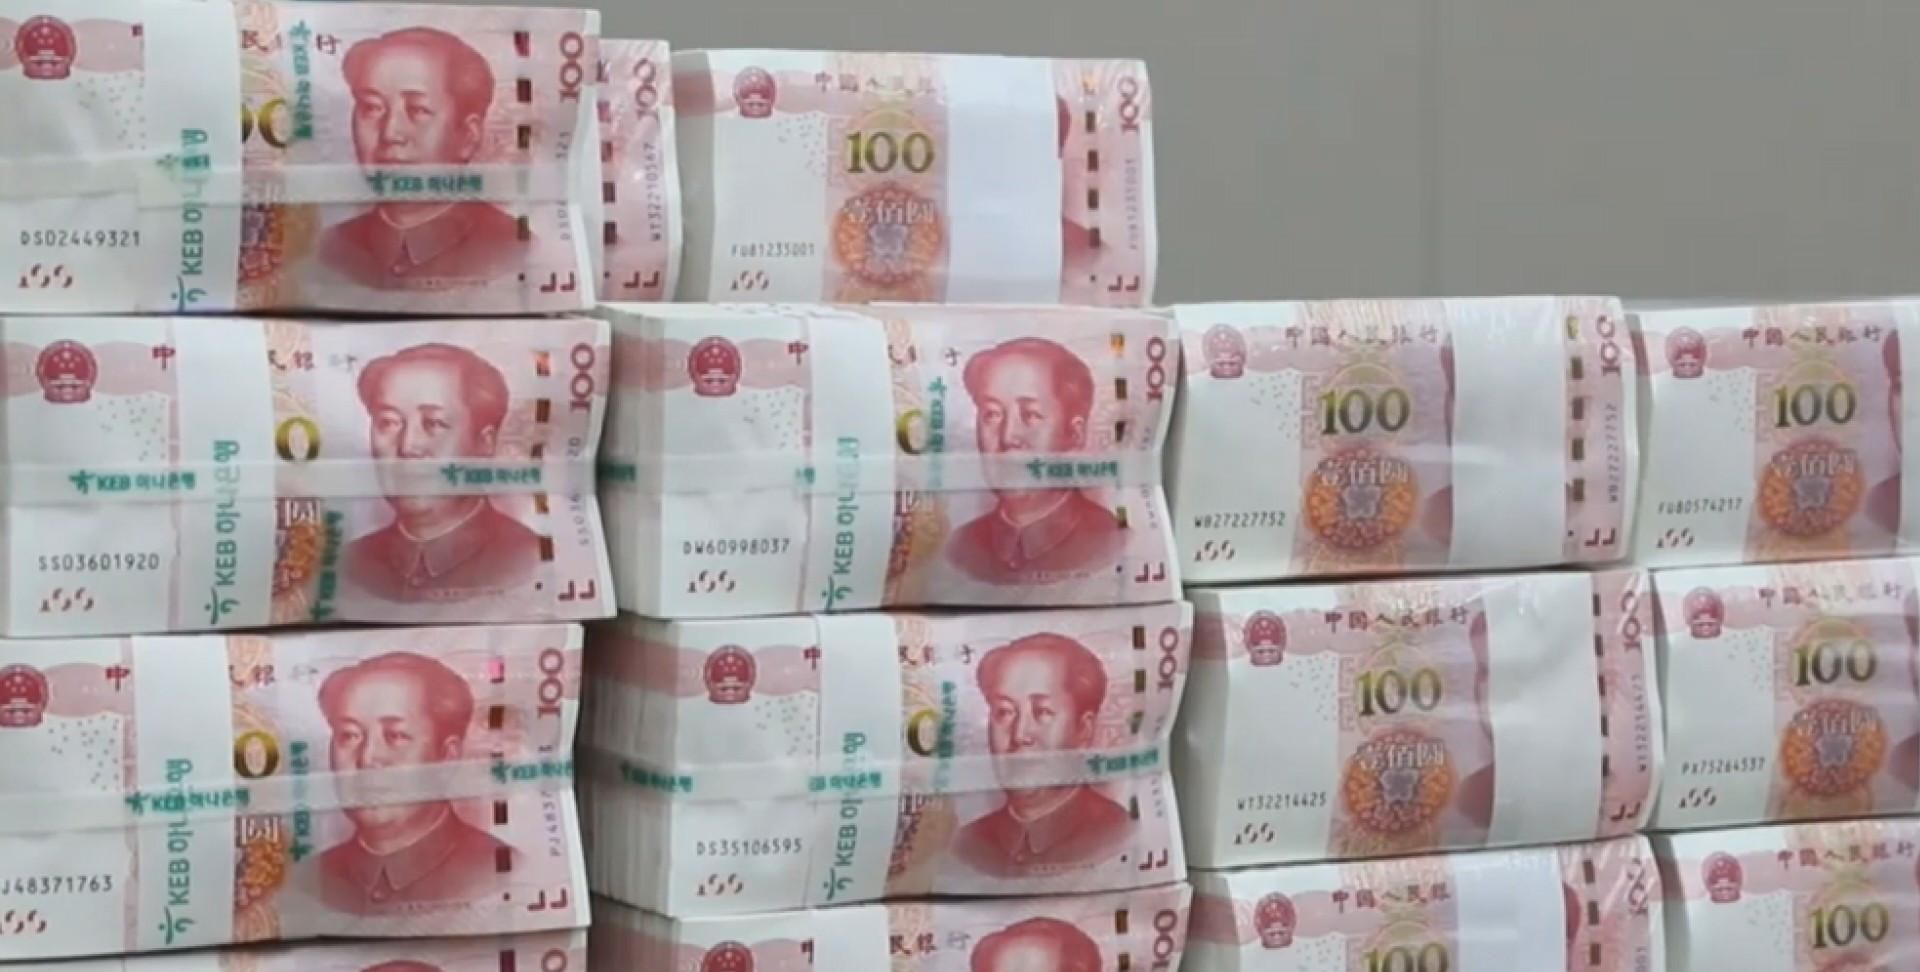 中国人美元叫美金,那外国是怎么称呼